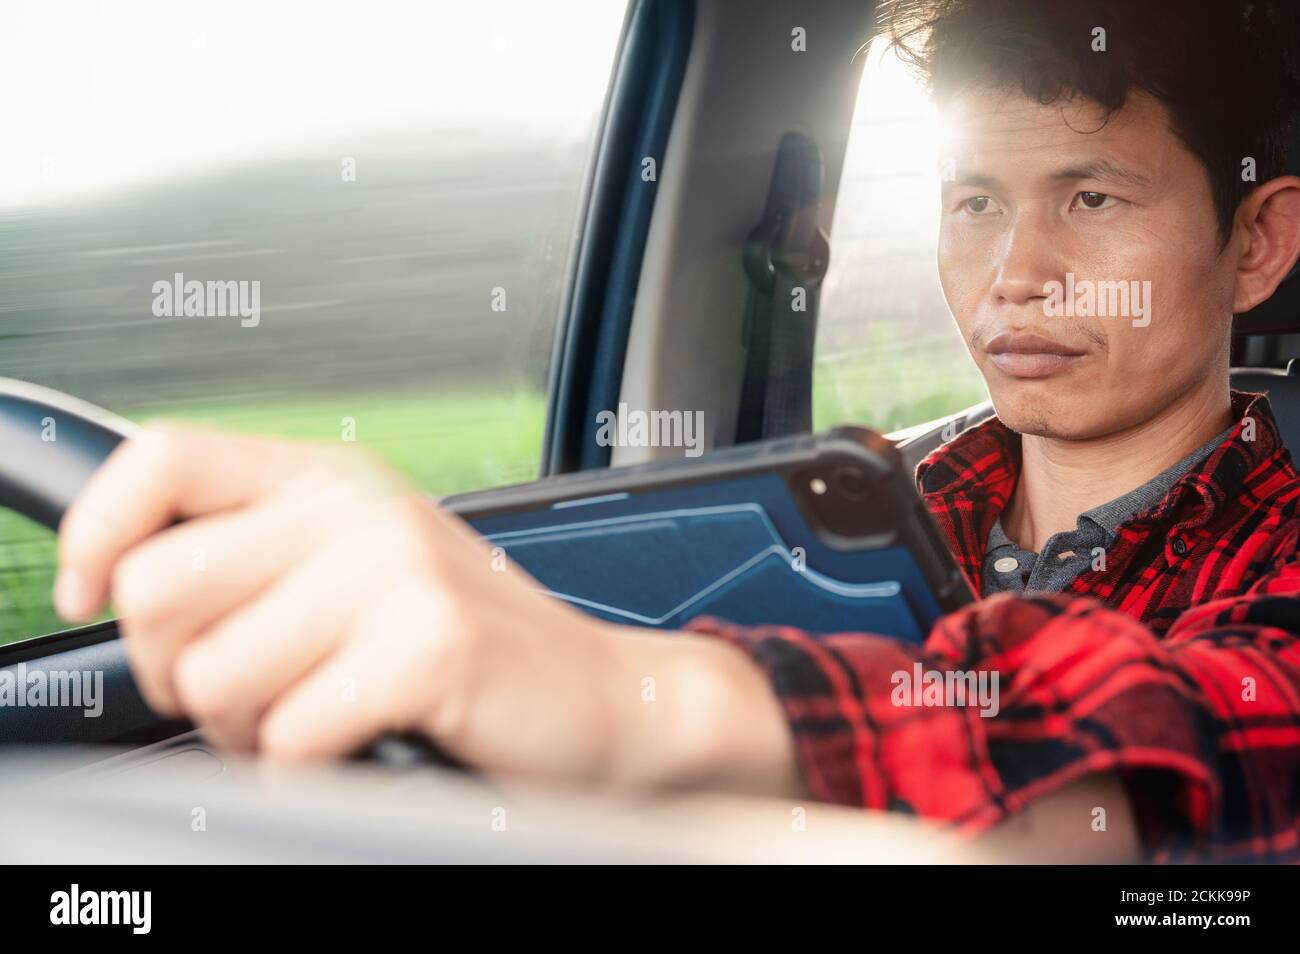 Mann benutzen Tablet oder Telefon, während er ein Auto fährt Blick auf ein Gerät und Straße und Lenkung ein Rad Und SMS-Eingabe Nachricht und fahren, gefährlich Stockfoto